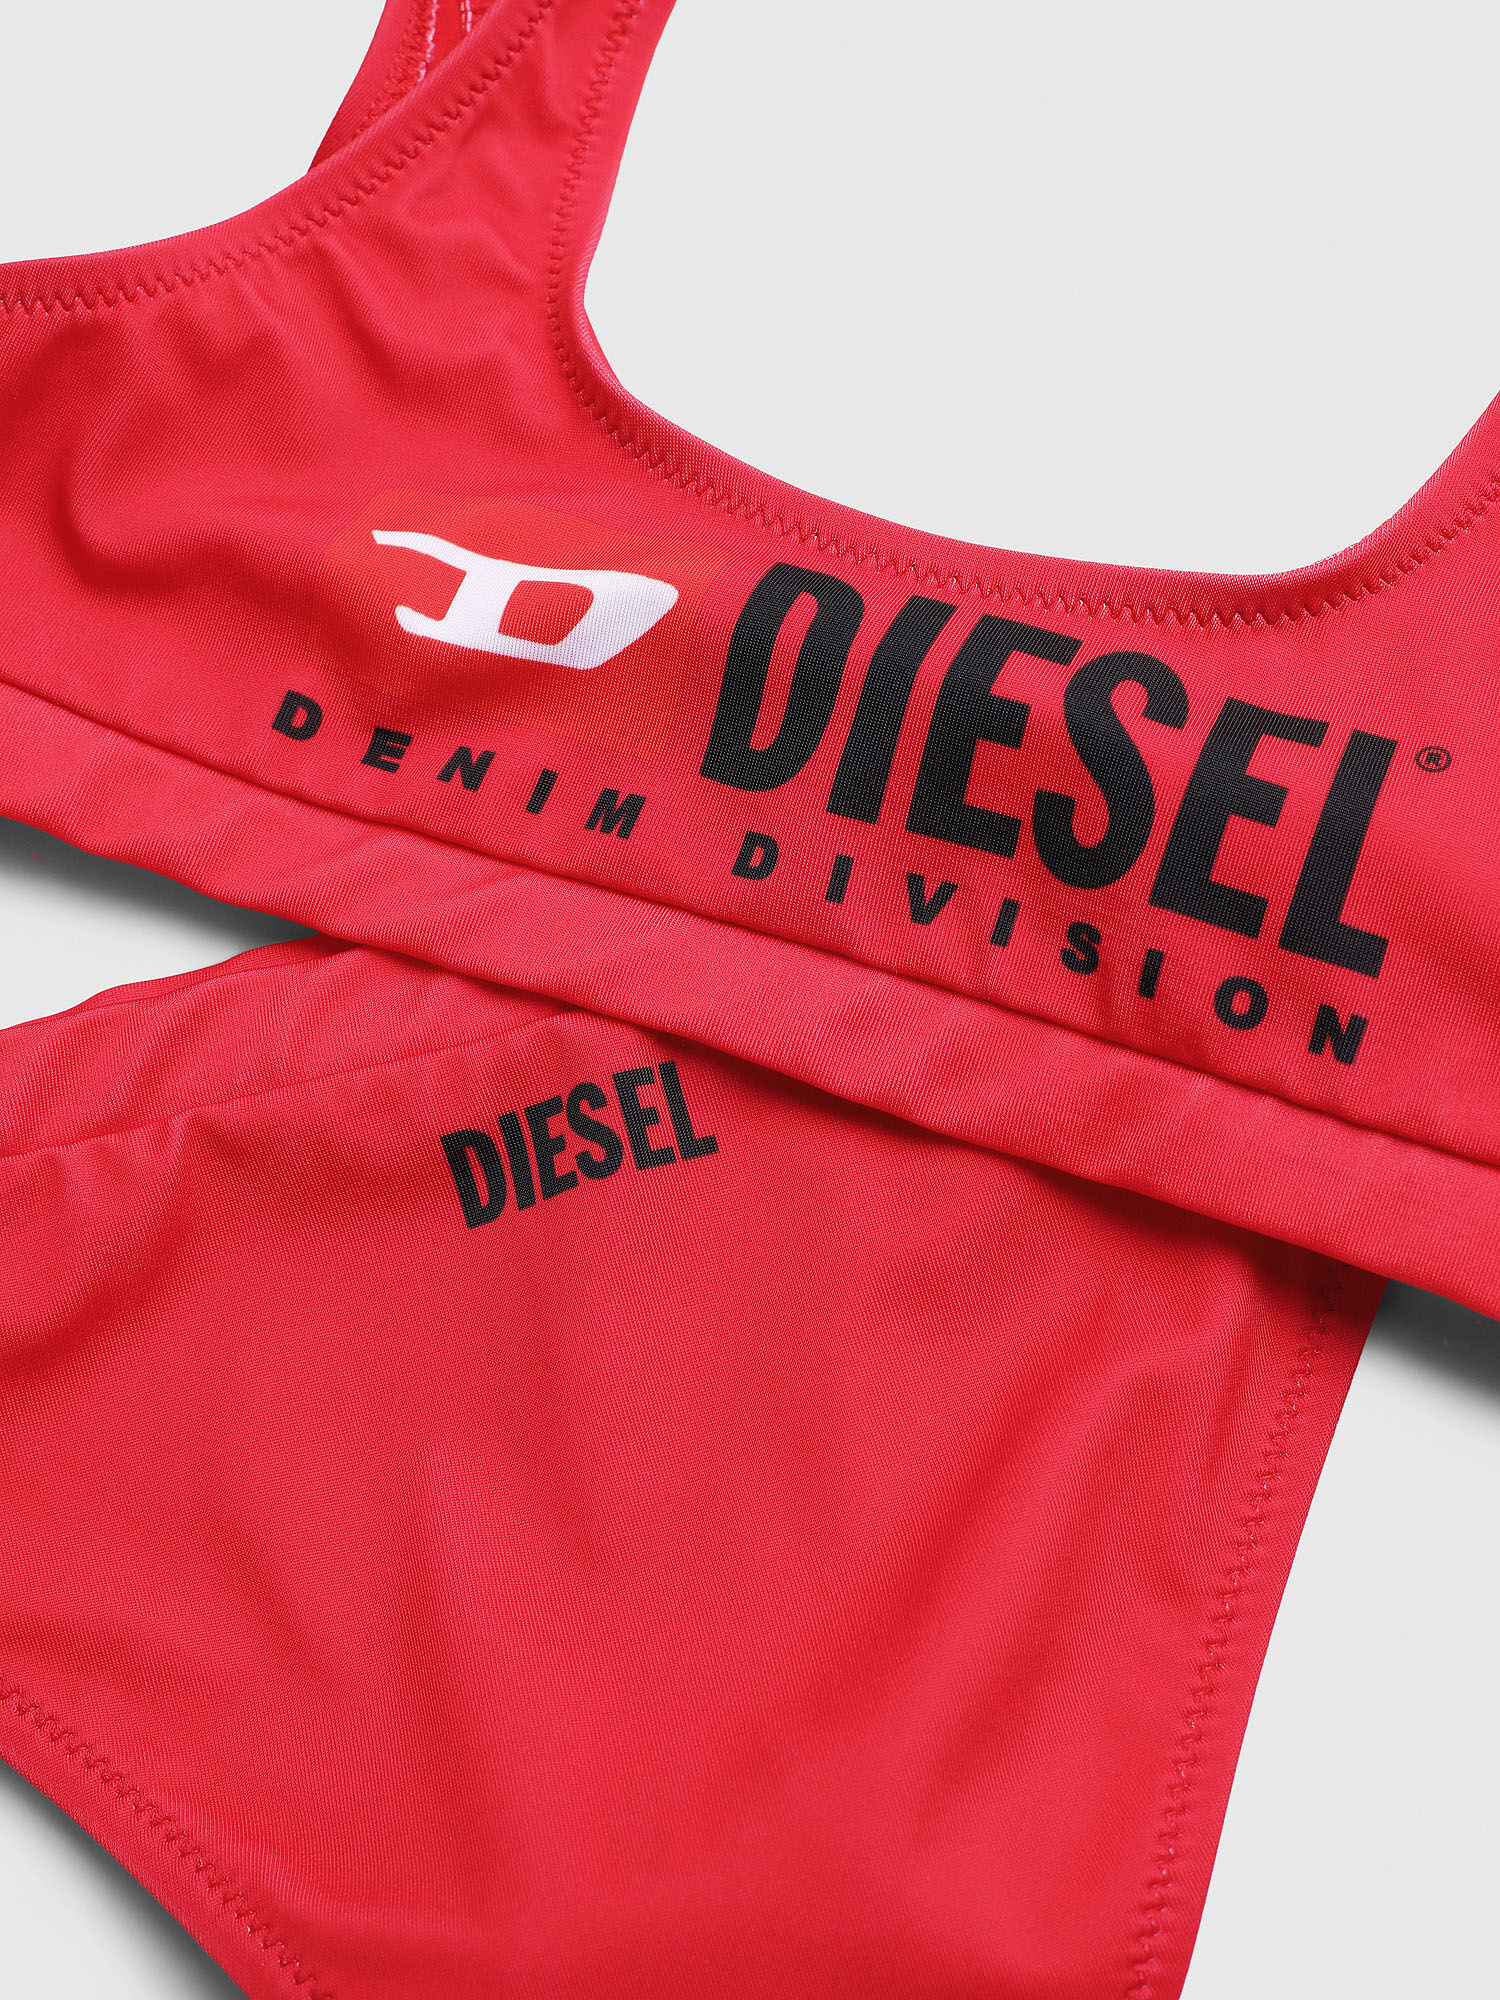 Diesel - METSJ, Red - Image 3